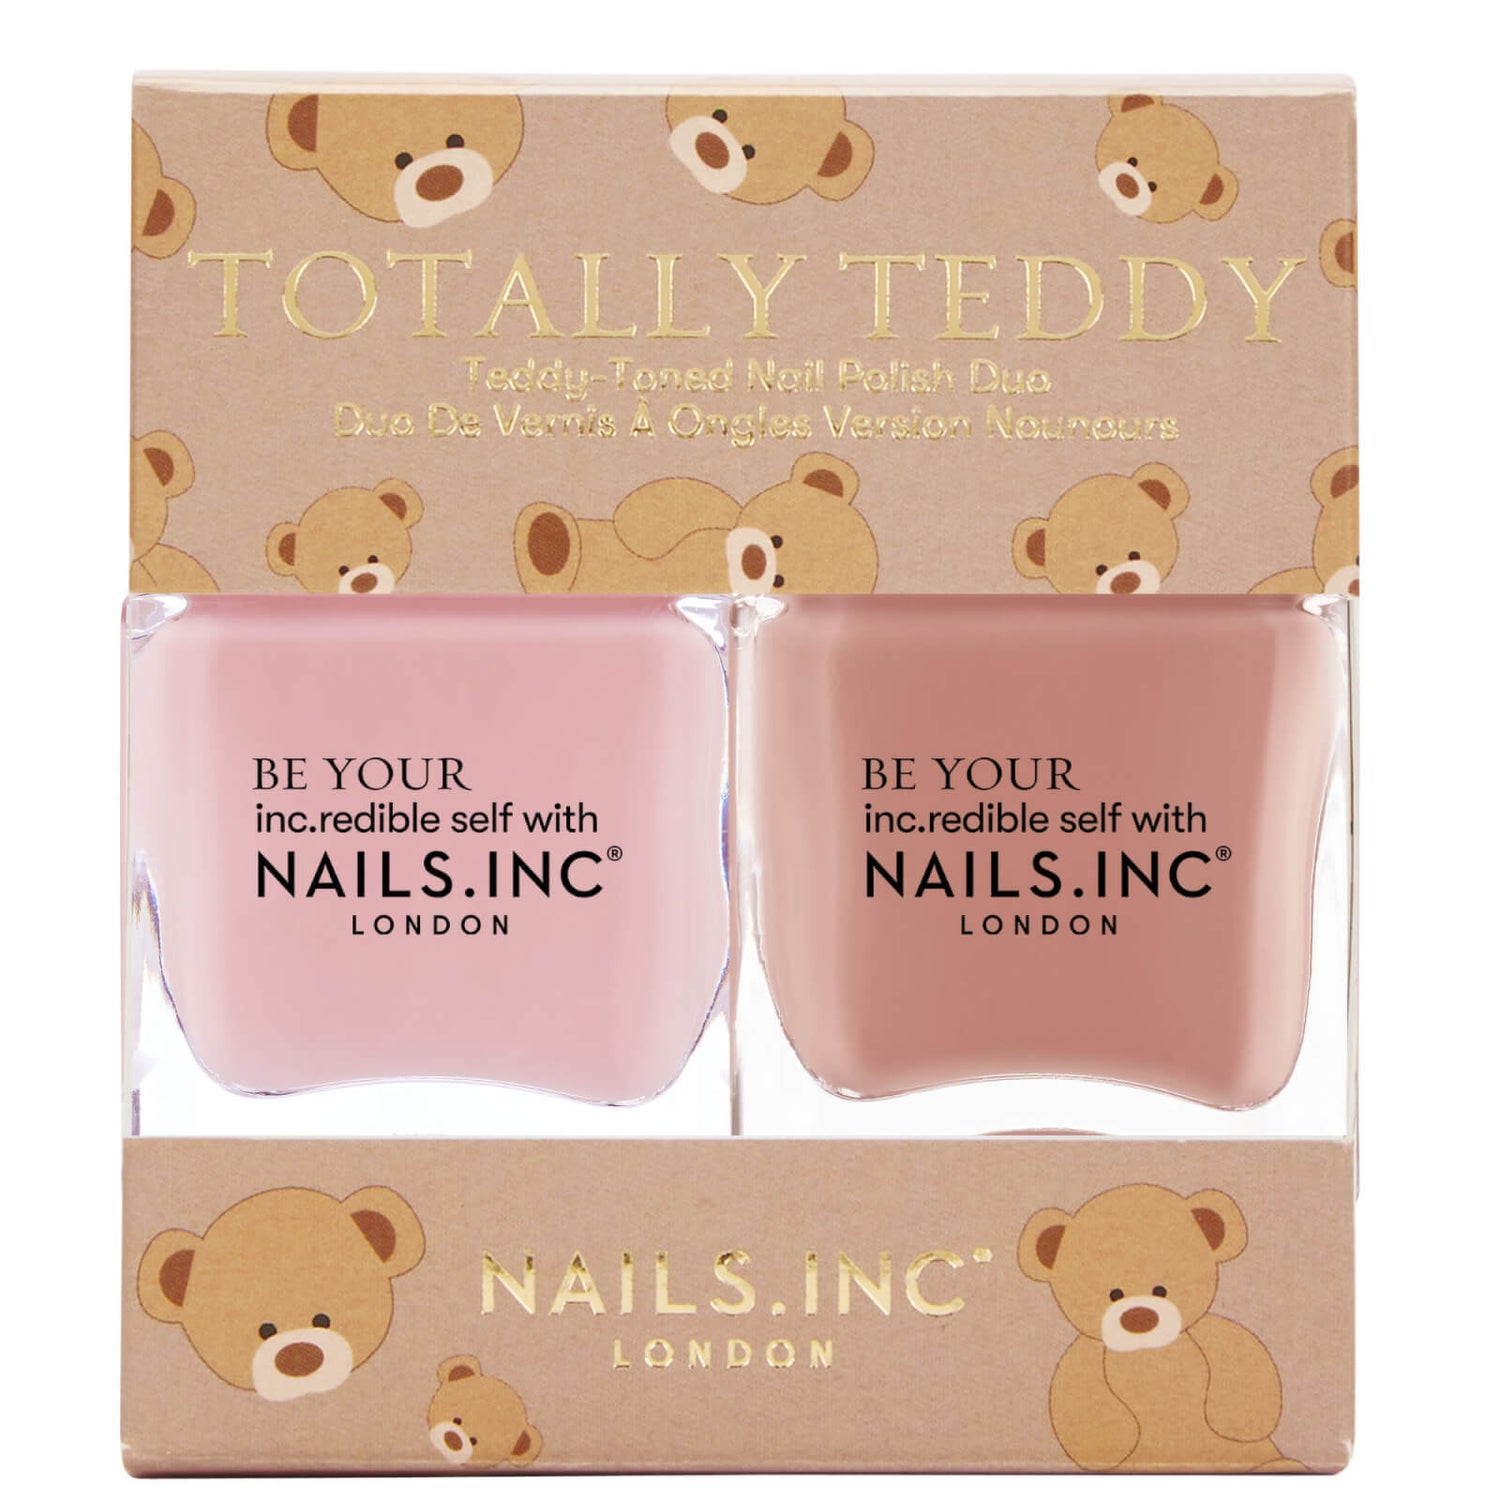 nails inc. Totally Teddy Nail Polish Duo